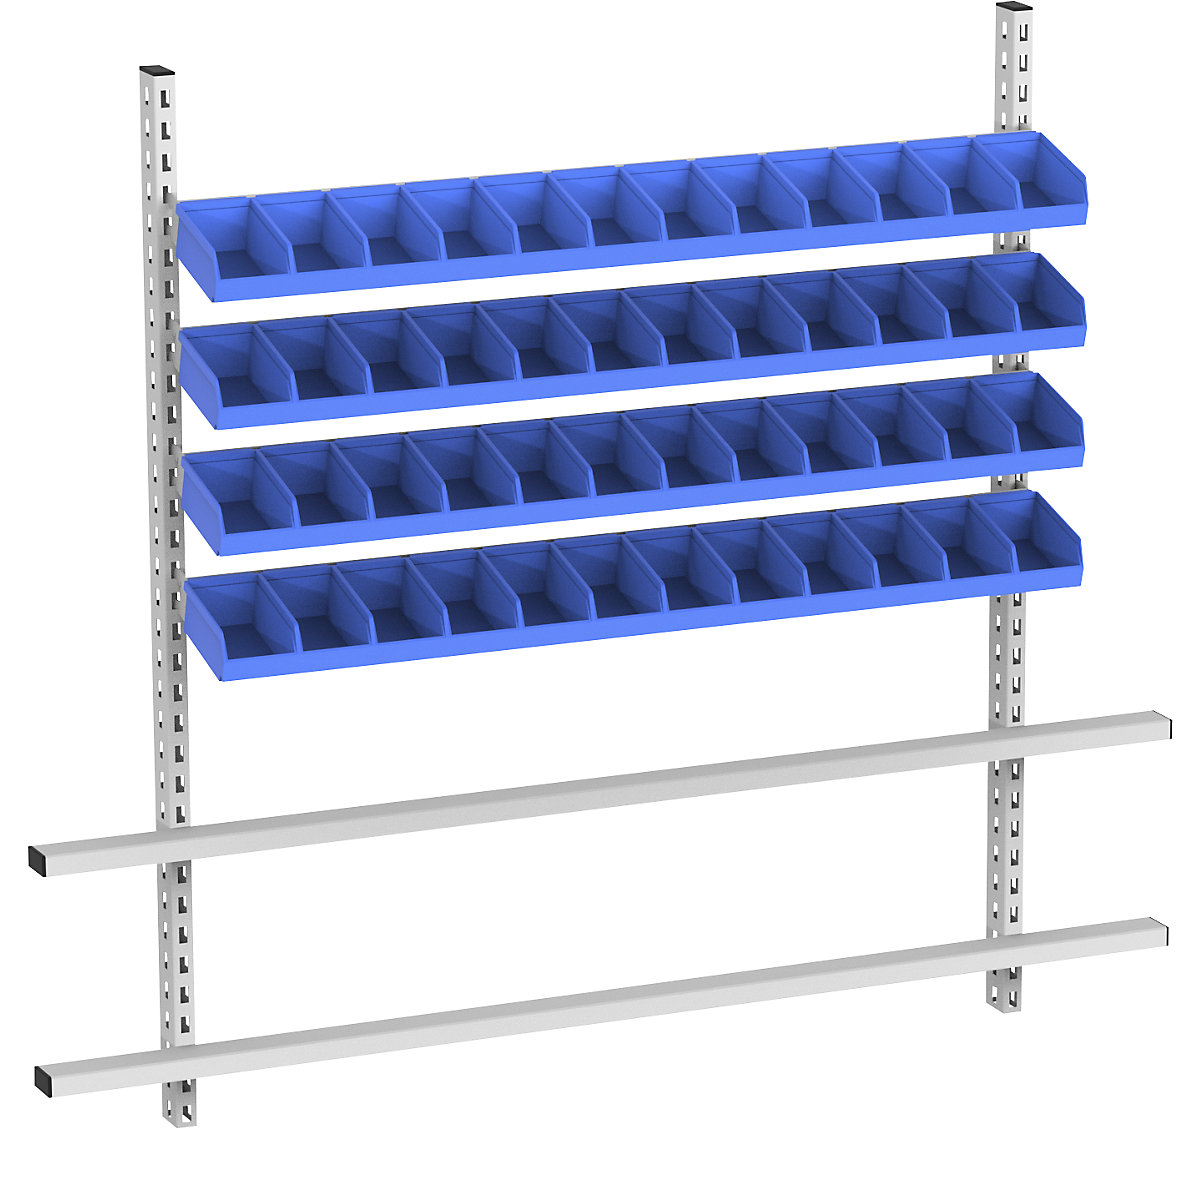 Superestrutura de mesa com caixas de armazenagem à vista